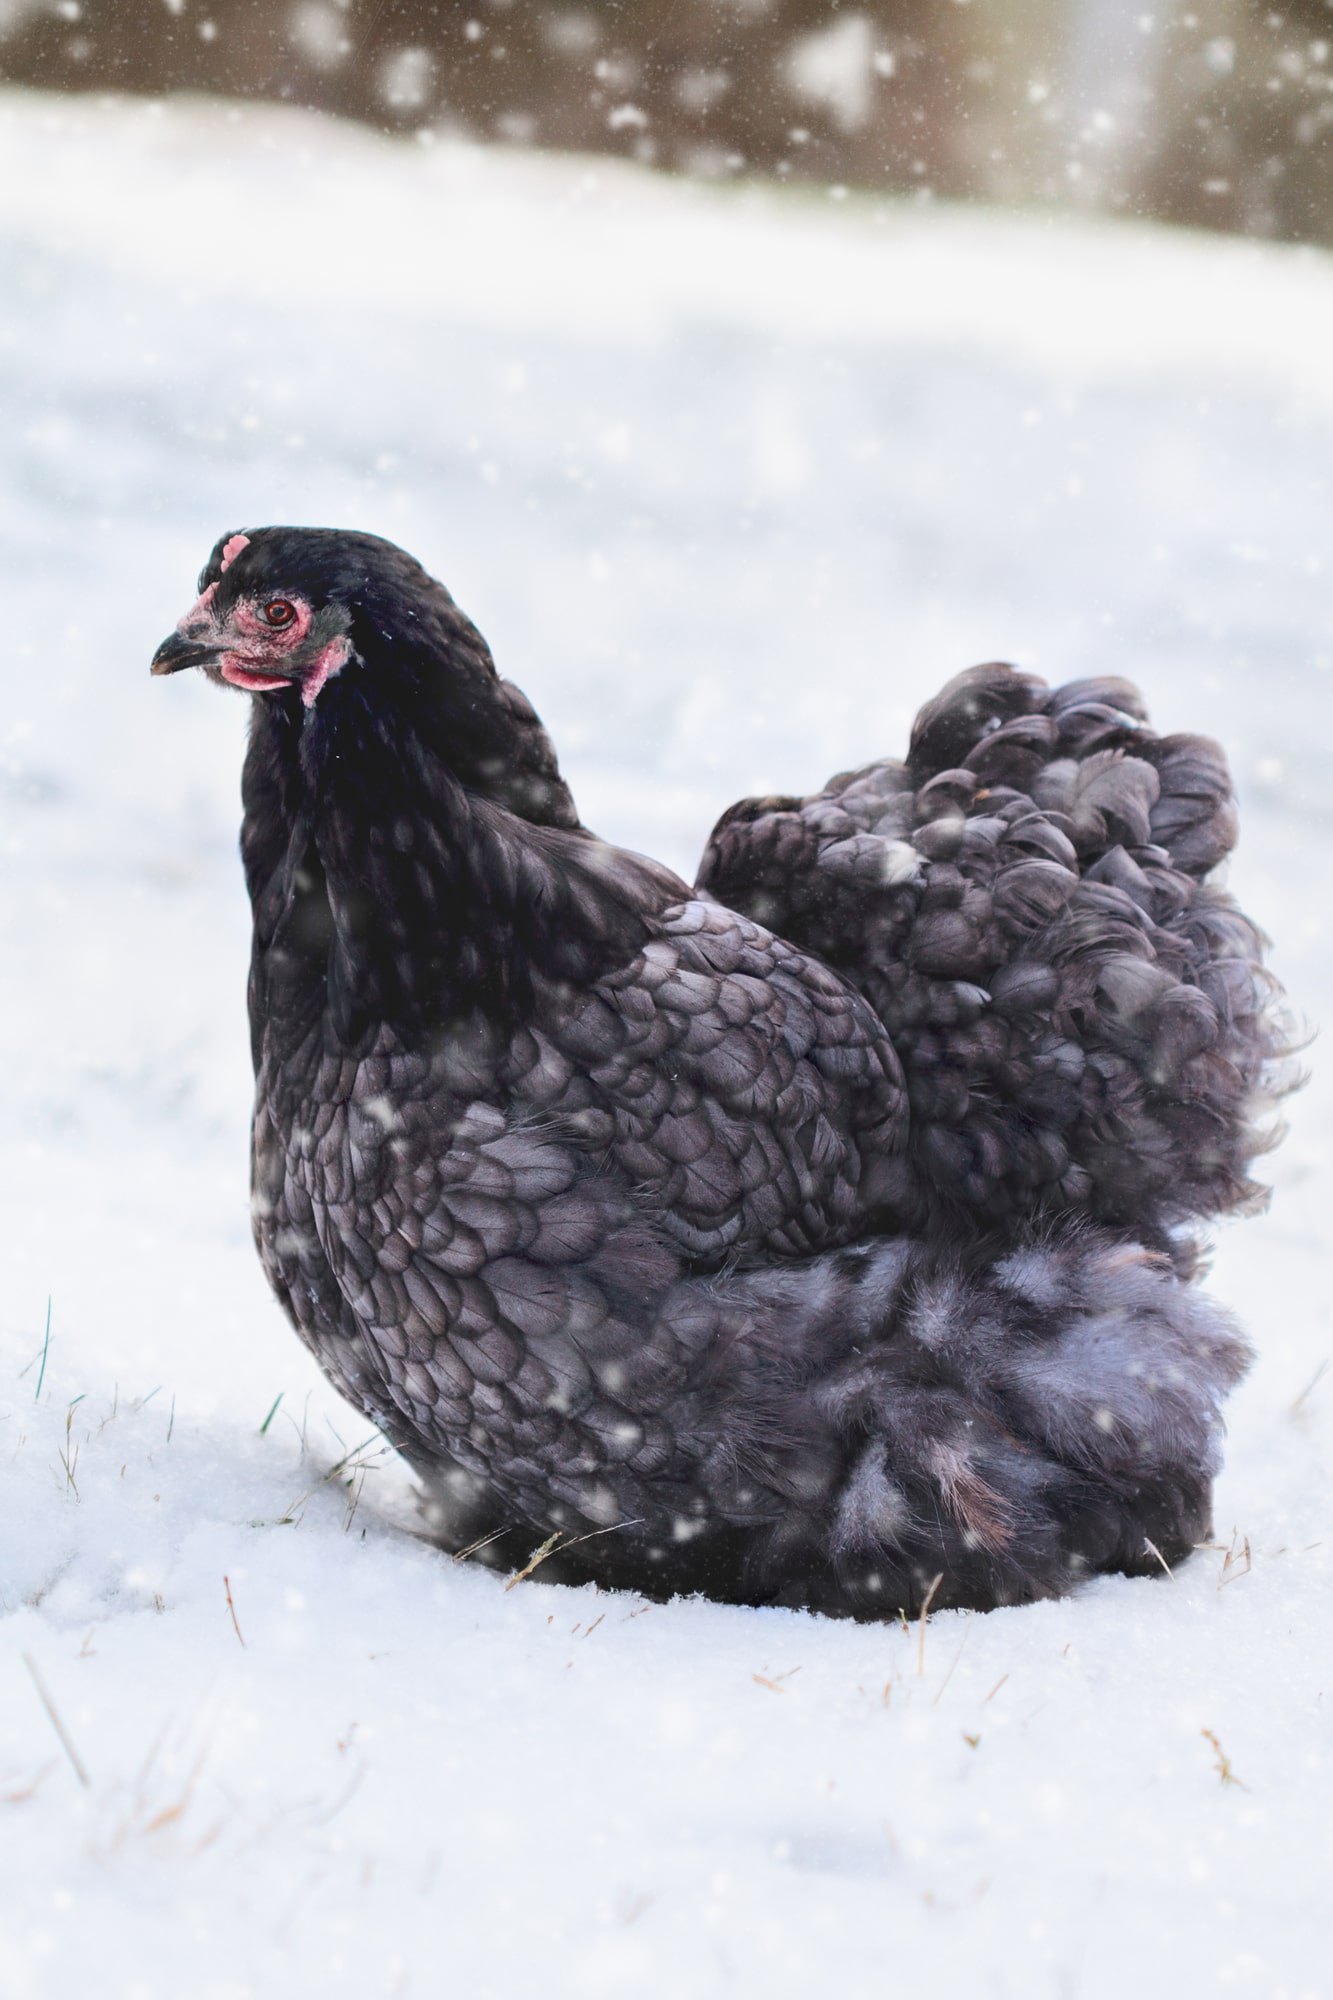 Blue chicken sitting in snow